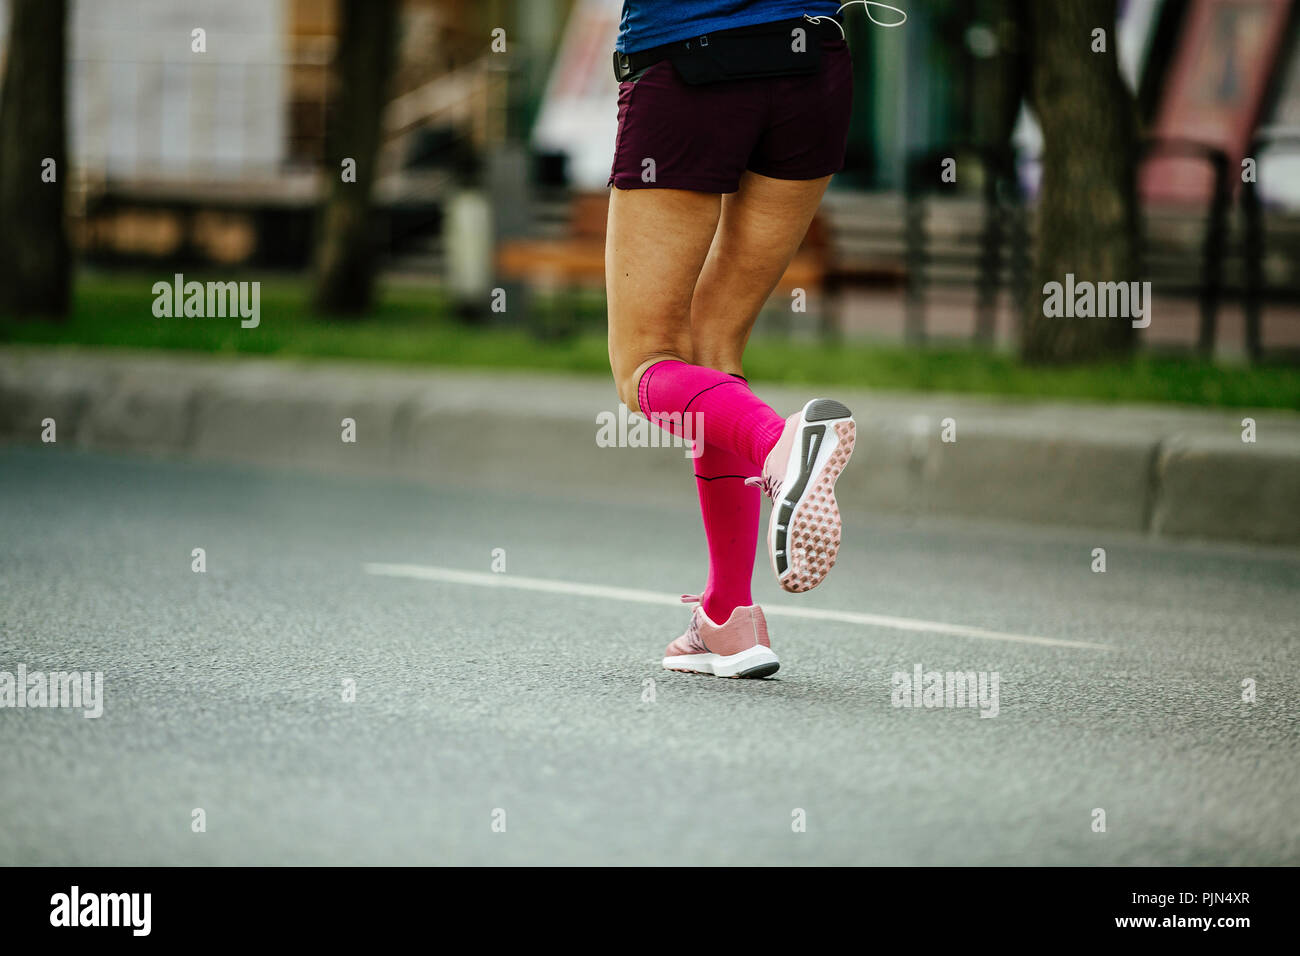 Frauen Beine Laufer In Rosa Kompression Socken Laufen Stockfotografie Alamy